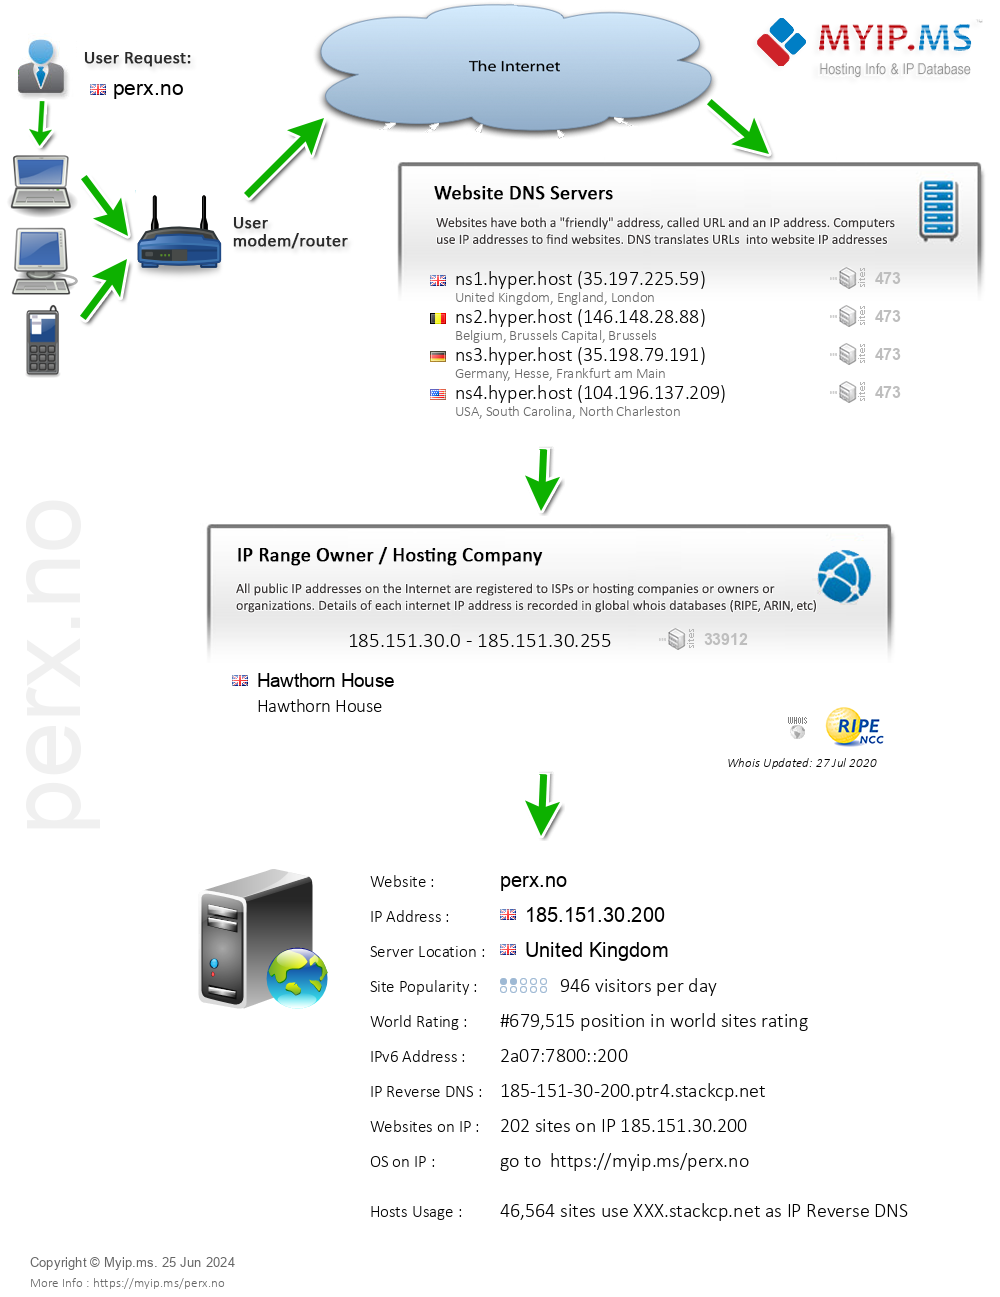 Perx.no - Website Hosting Visual IP Diagram